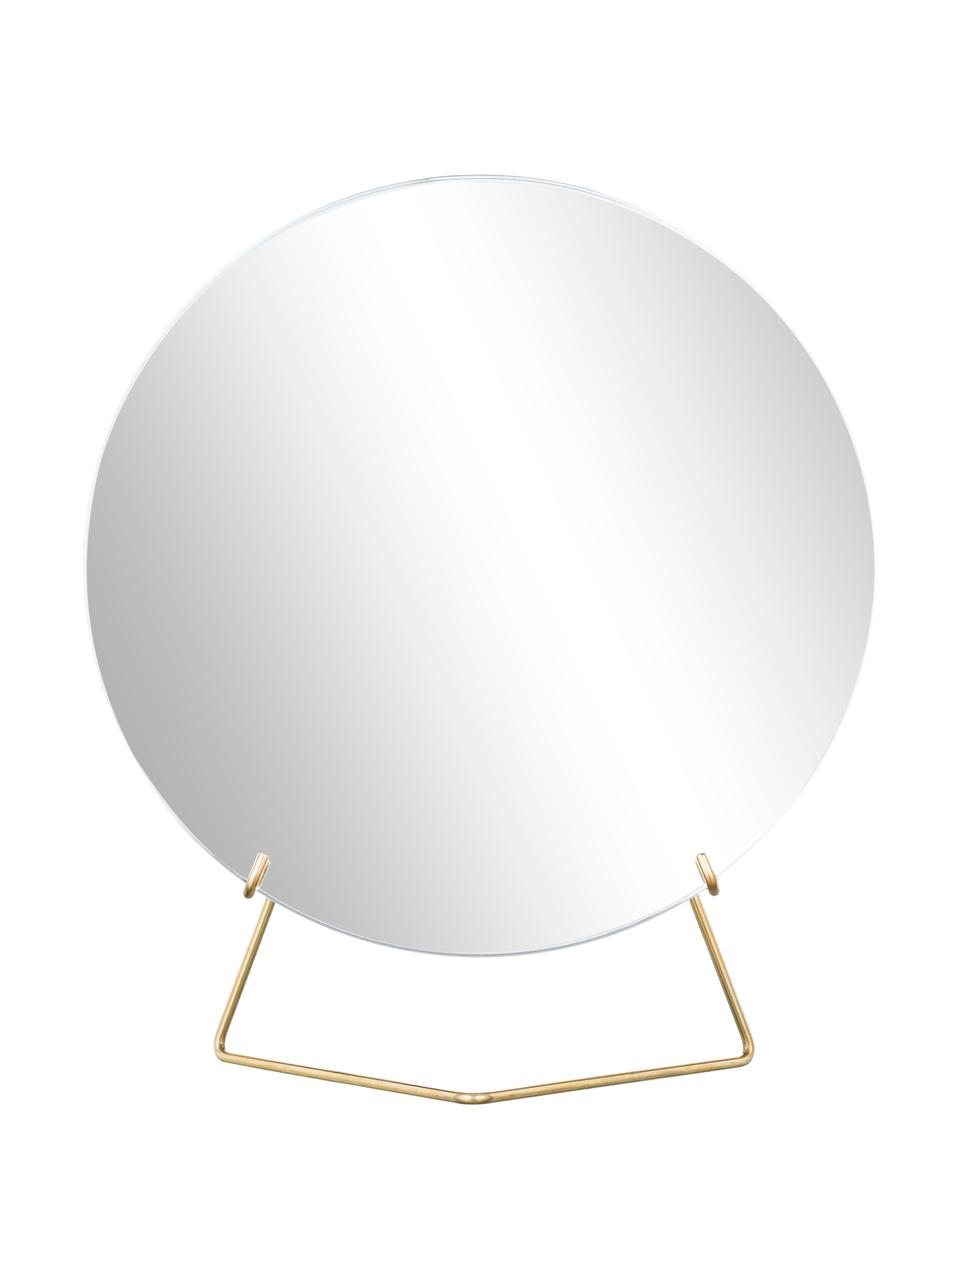 Runder Kosmetikspiegel Standing Mirror mit goldenem Stahlrahmen, Gestell: Stahl, pulverbeschichtet, Spiegelfläche: Spiegelglas, Goldfarben, 30 x 35 cm